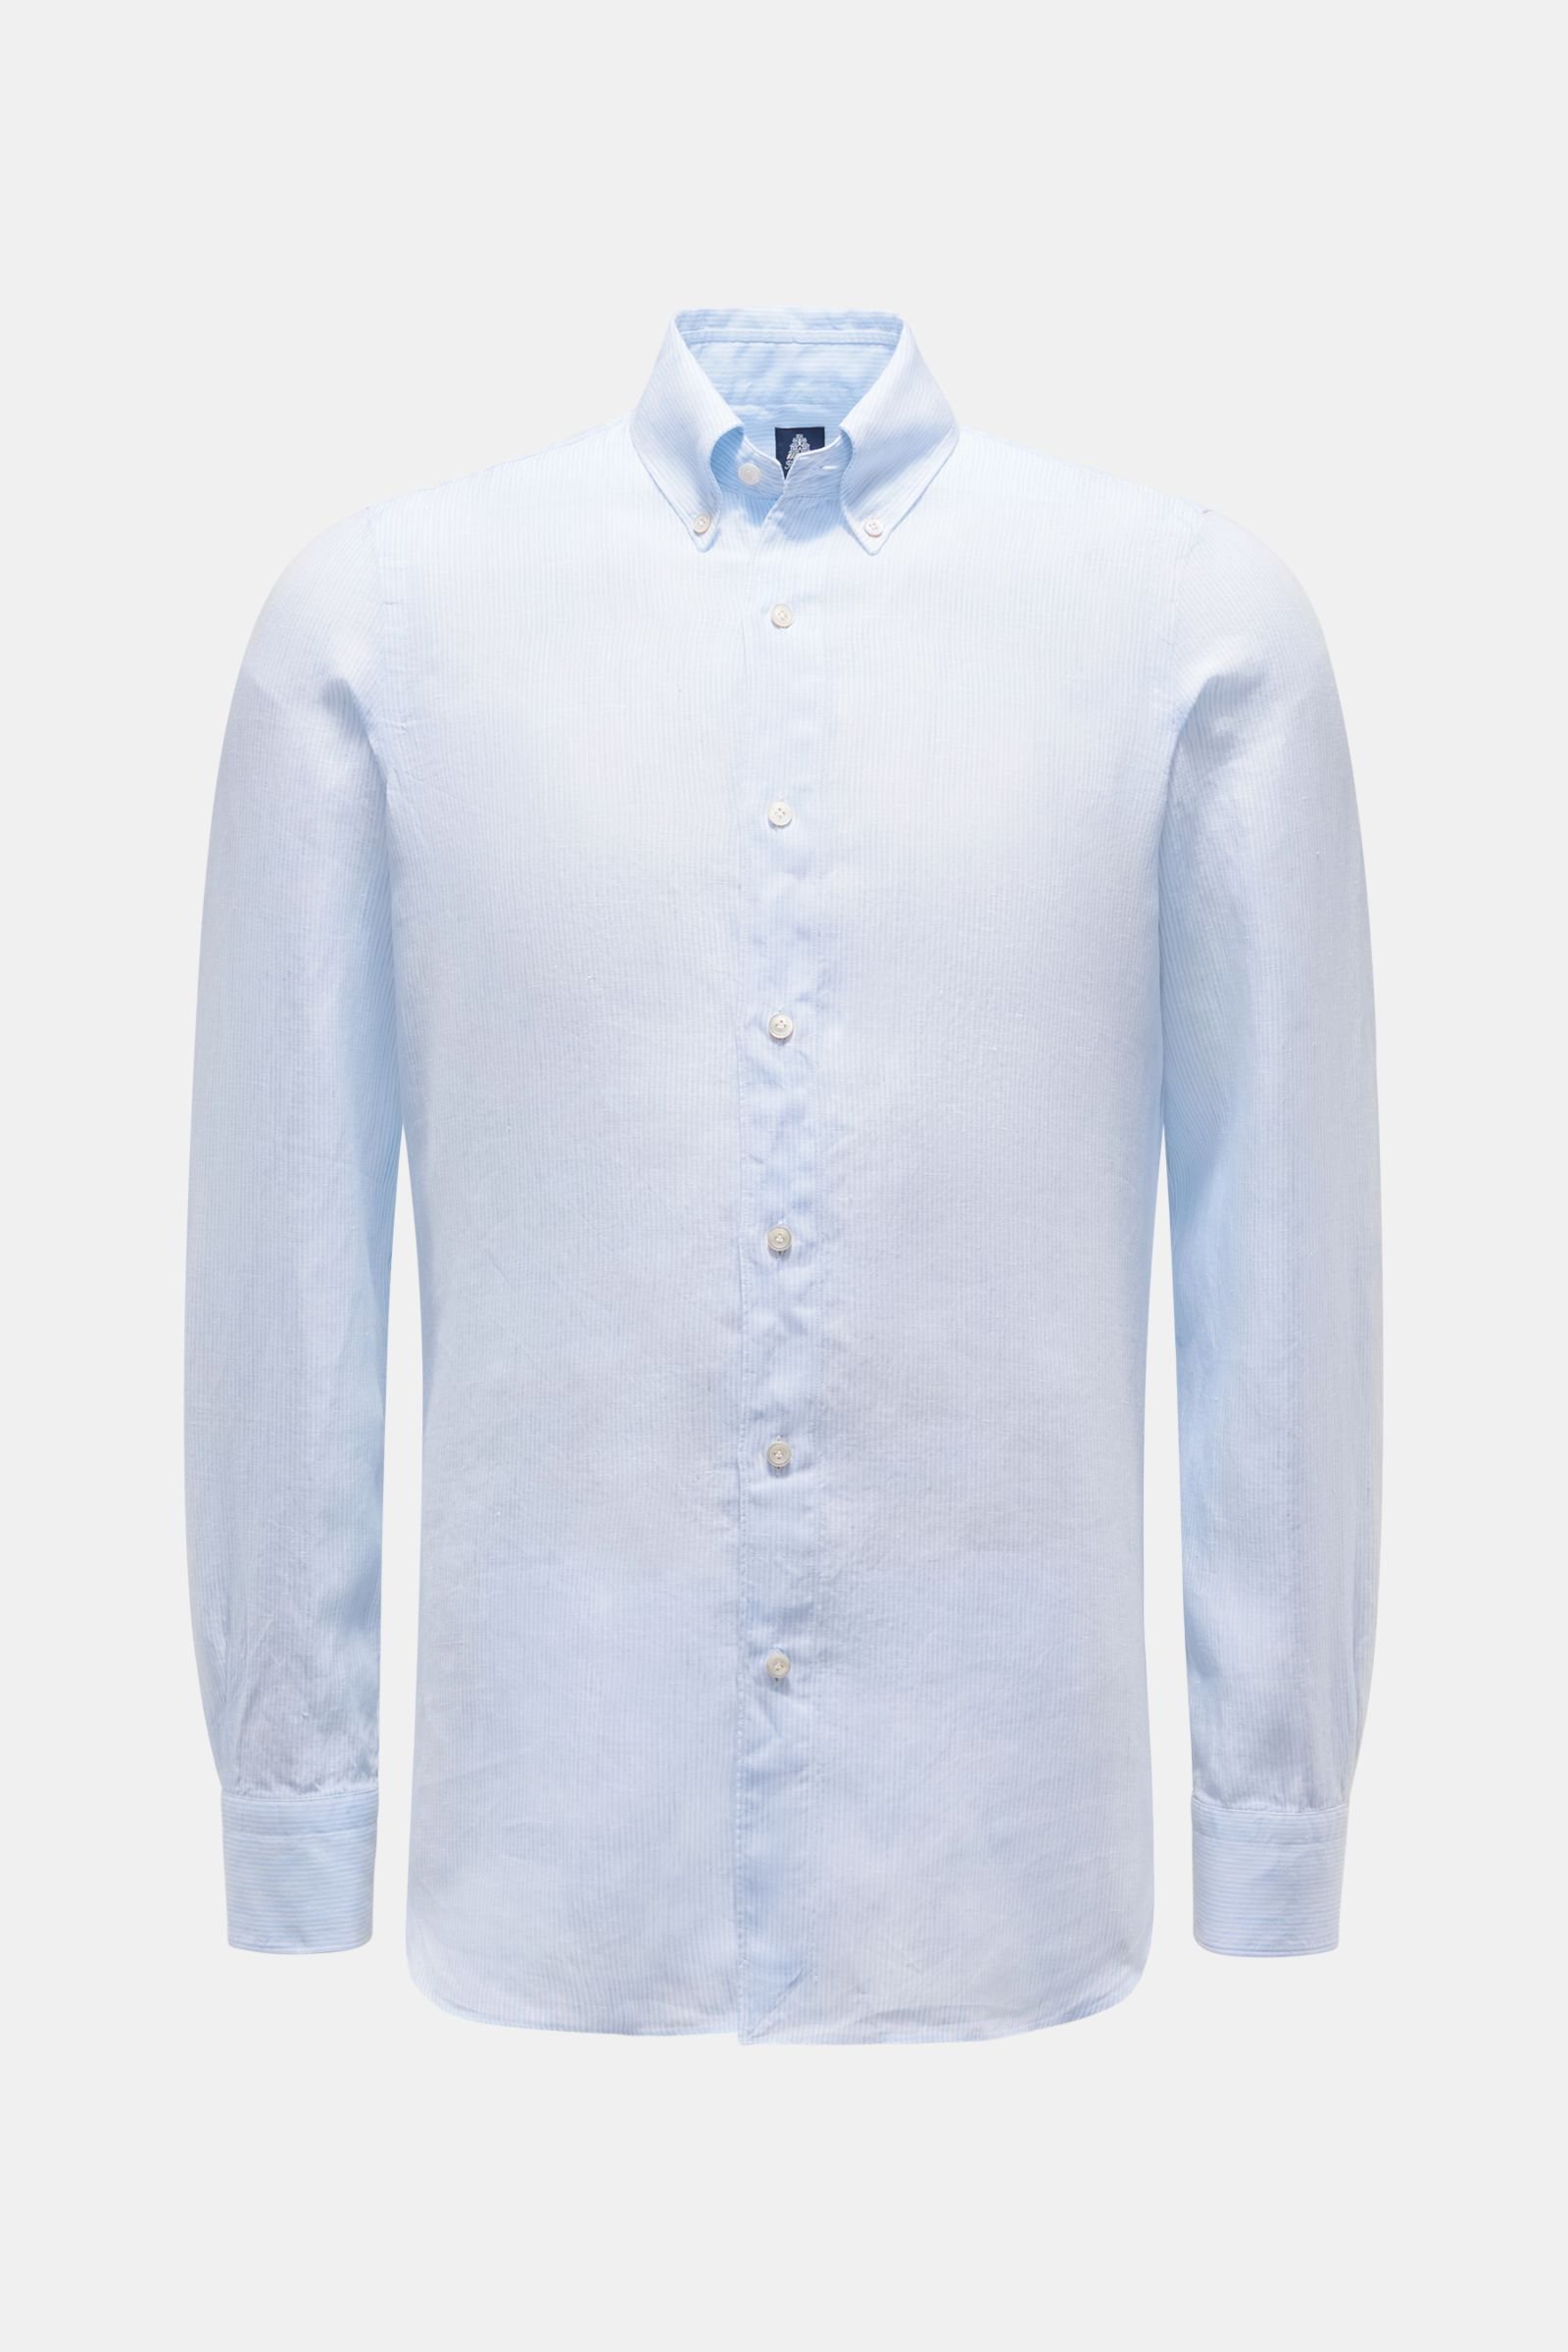 Leinenhemd 'Leonardo Gaeta' Button-Down-Kragen hellblau/weiß gestreift